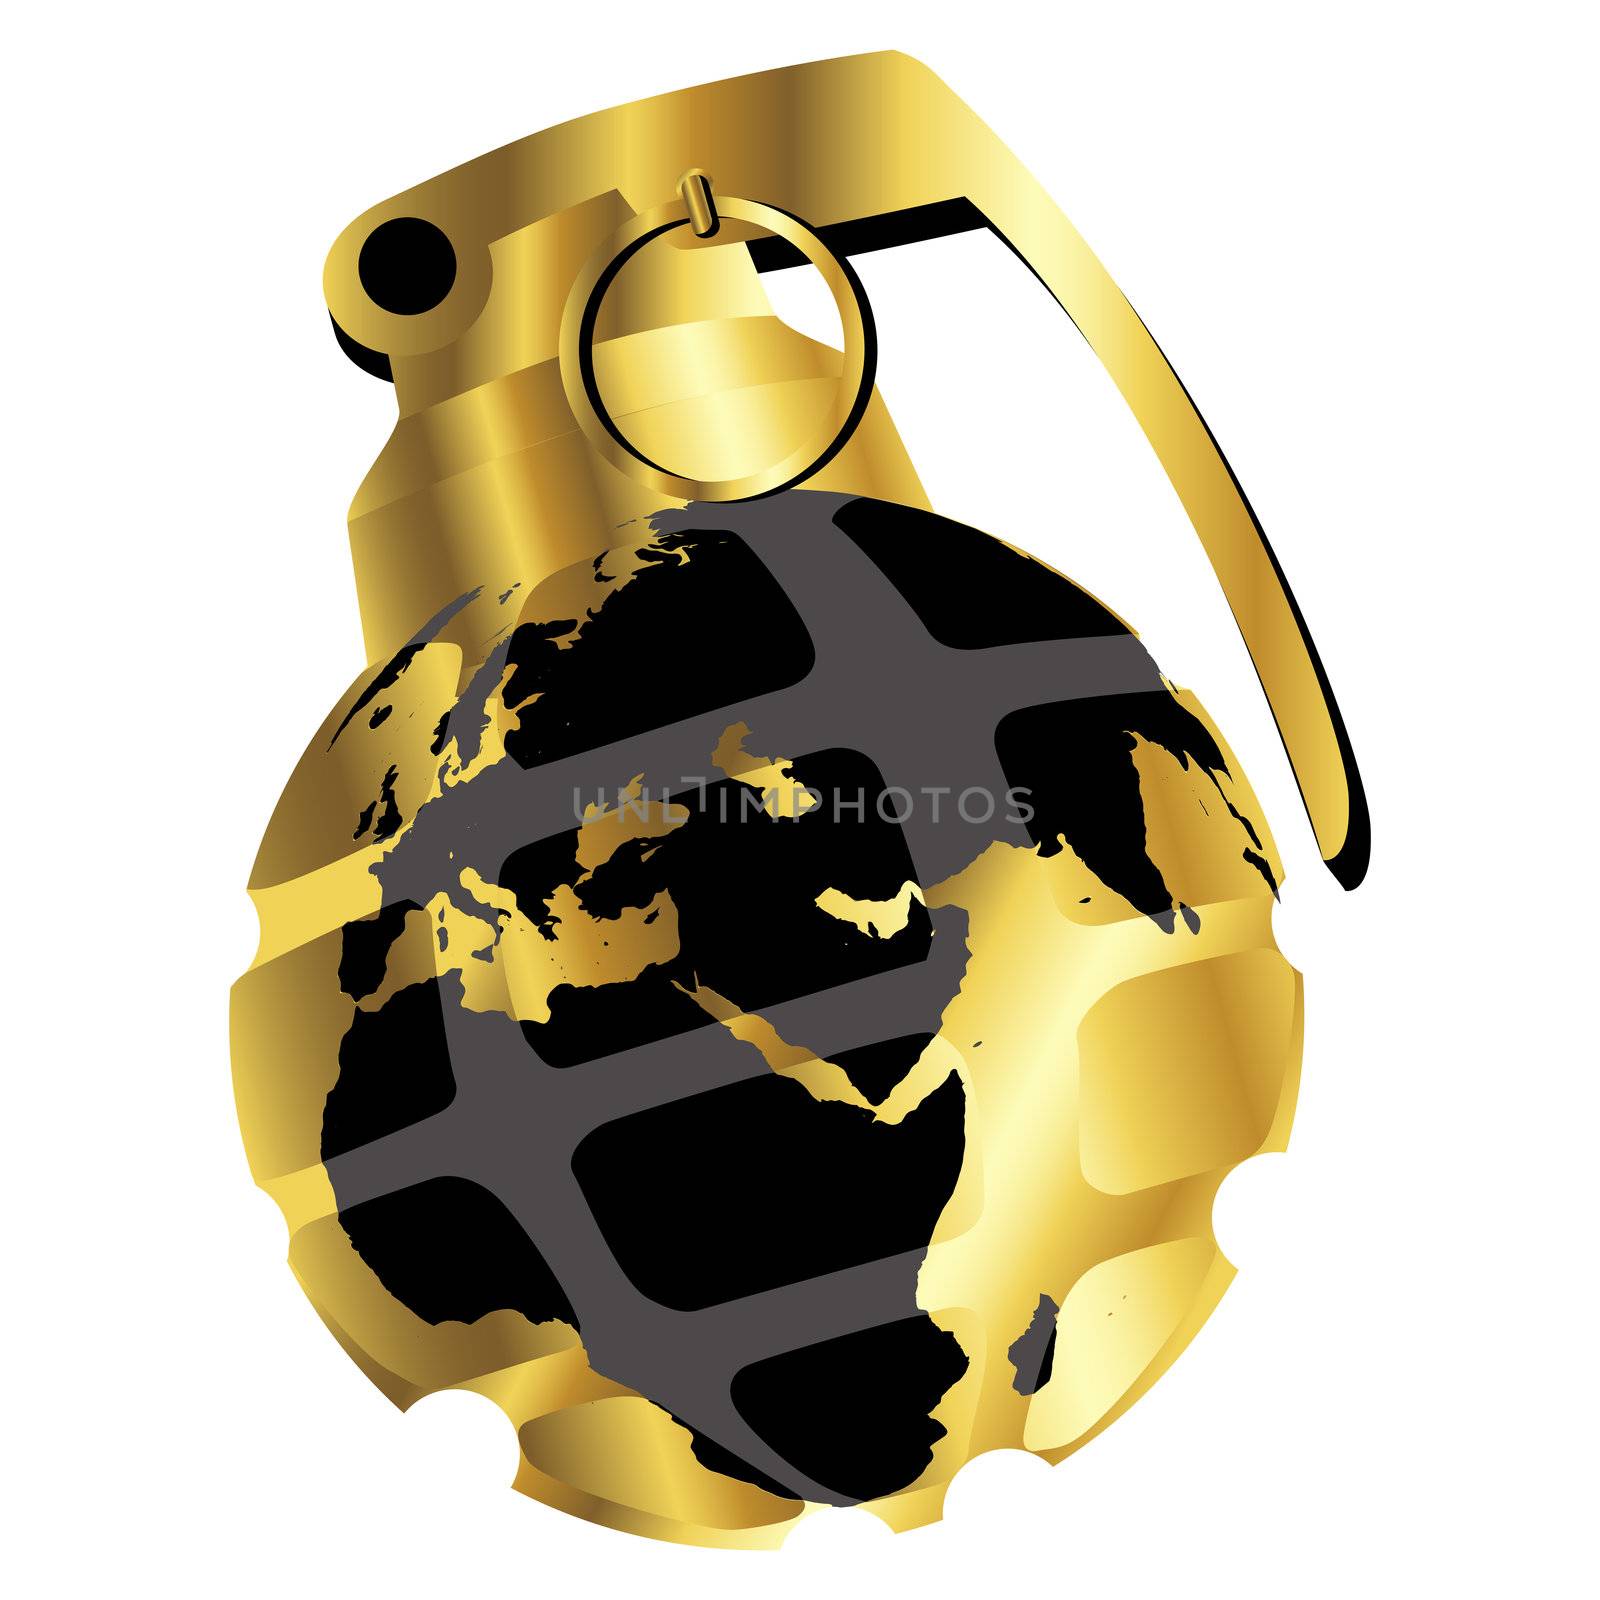 Golden hand grenade by Lirch